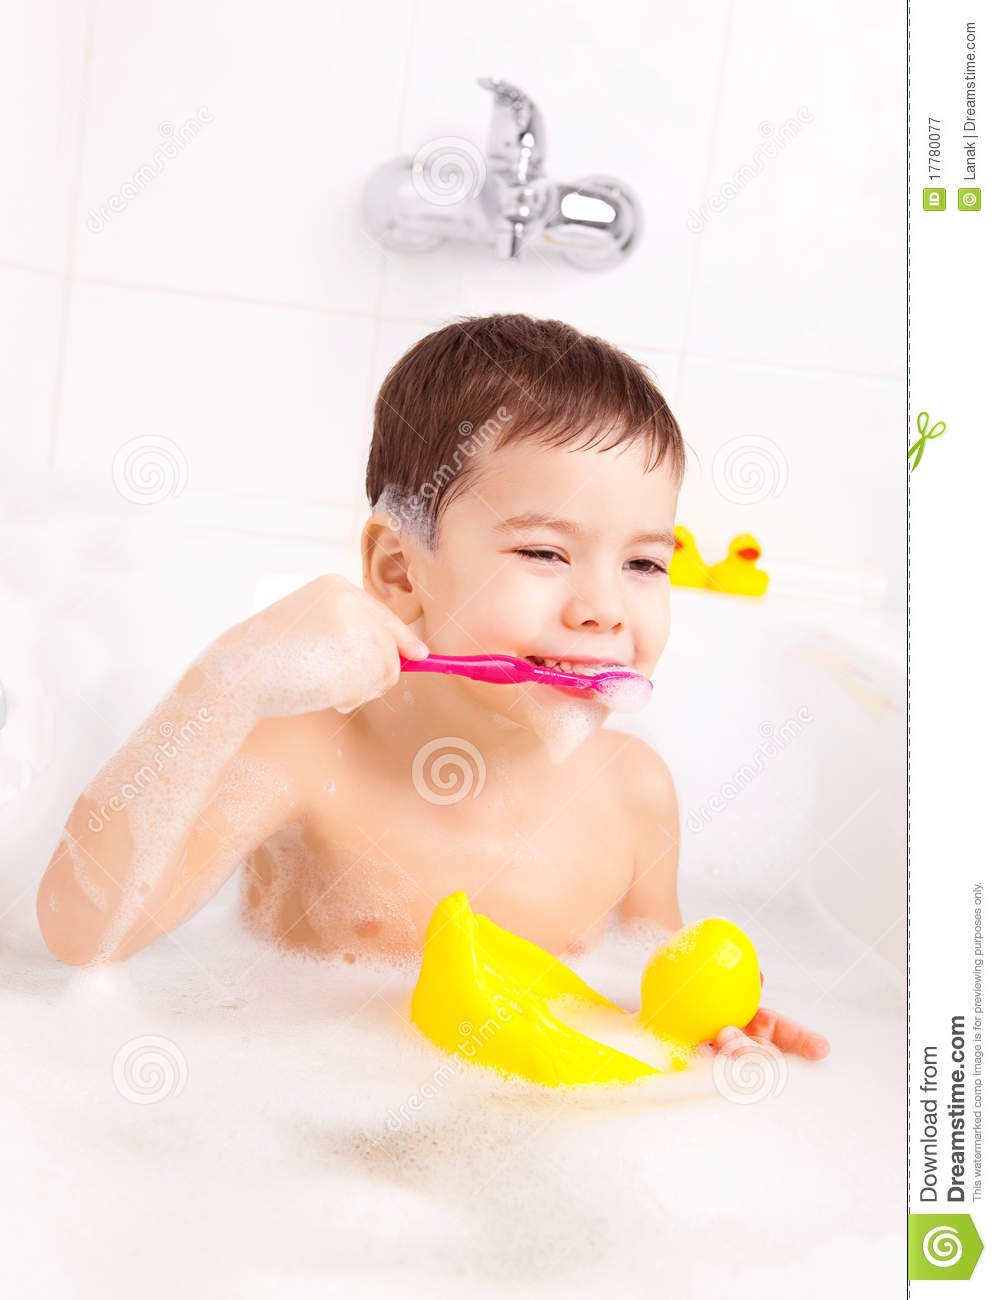 Child Brushing Teeth Royalty Free Stock Photography   Image  17780077